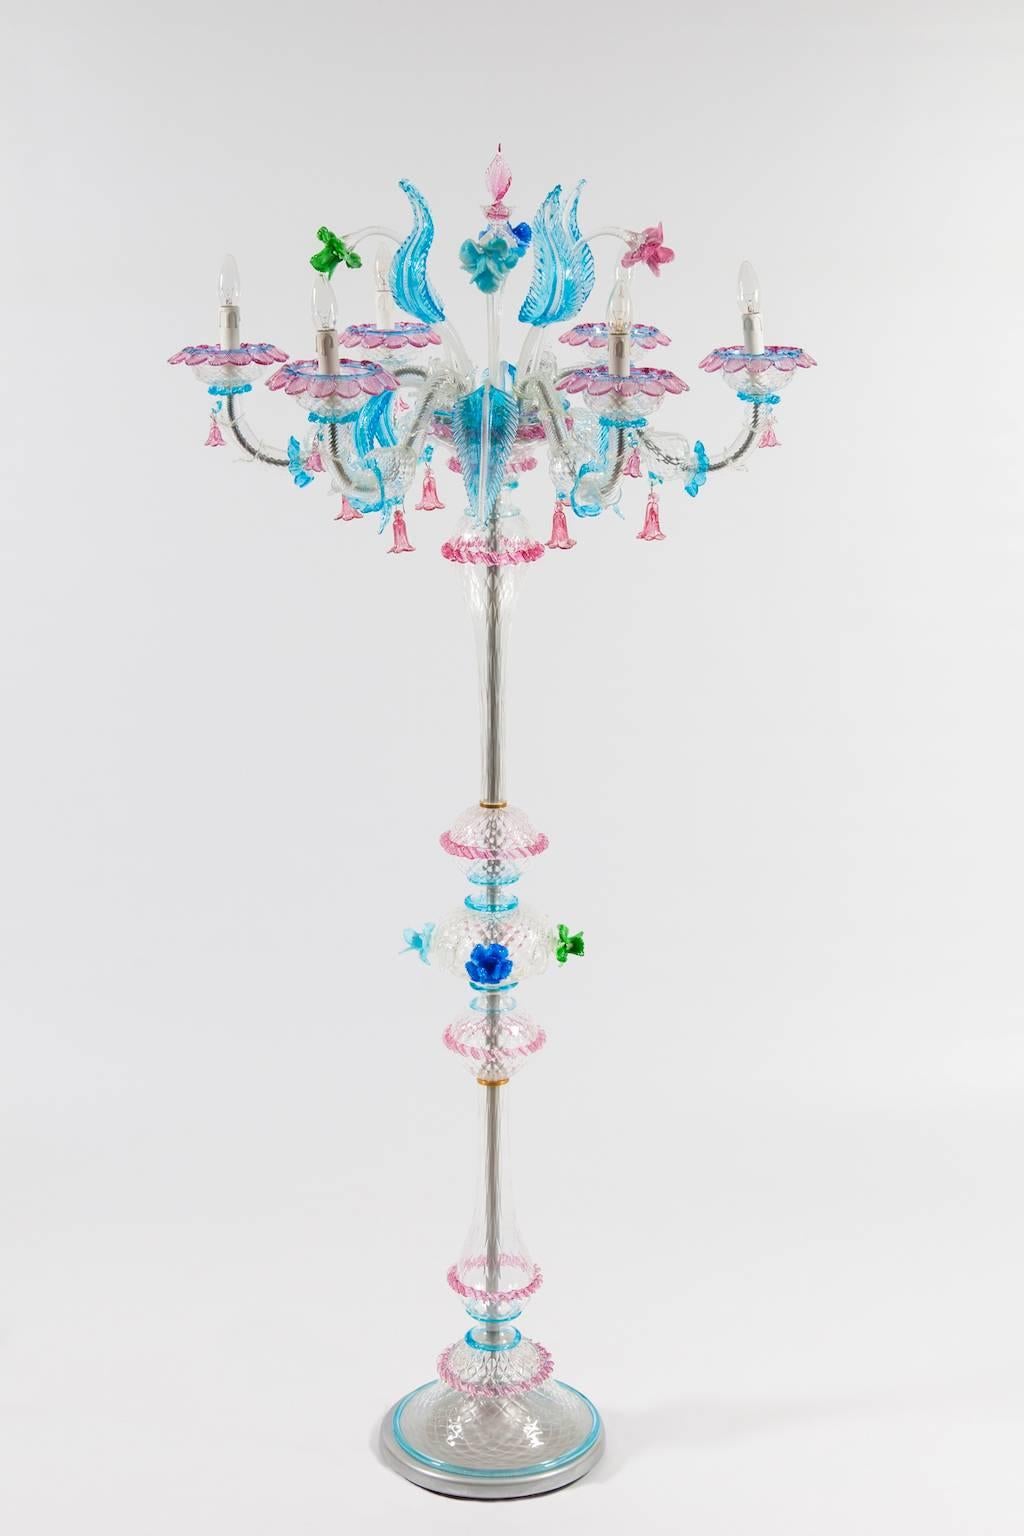 Lampadaire Rezzonico avec fleurs colorées en verre soufflé de Murano Italie années 1990.
Lampadaire italien Condit, en très excellent état d'origine, daté des années 1990. Cette beauté est composée d'une tige principale avec au milieu une sphère